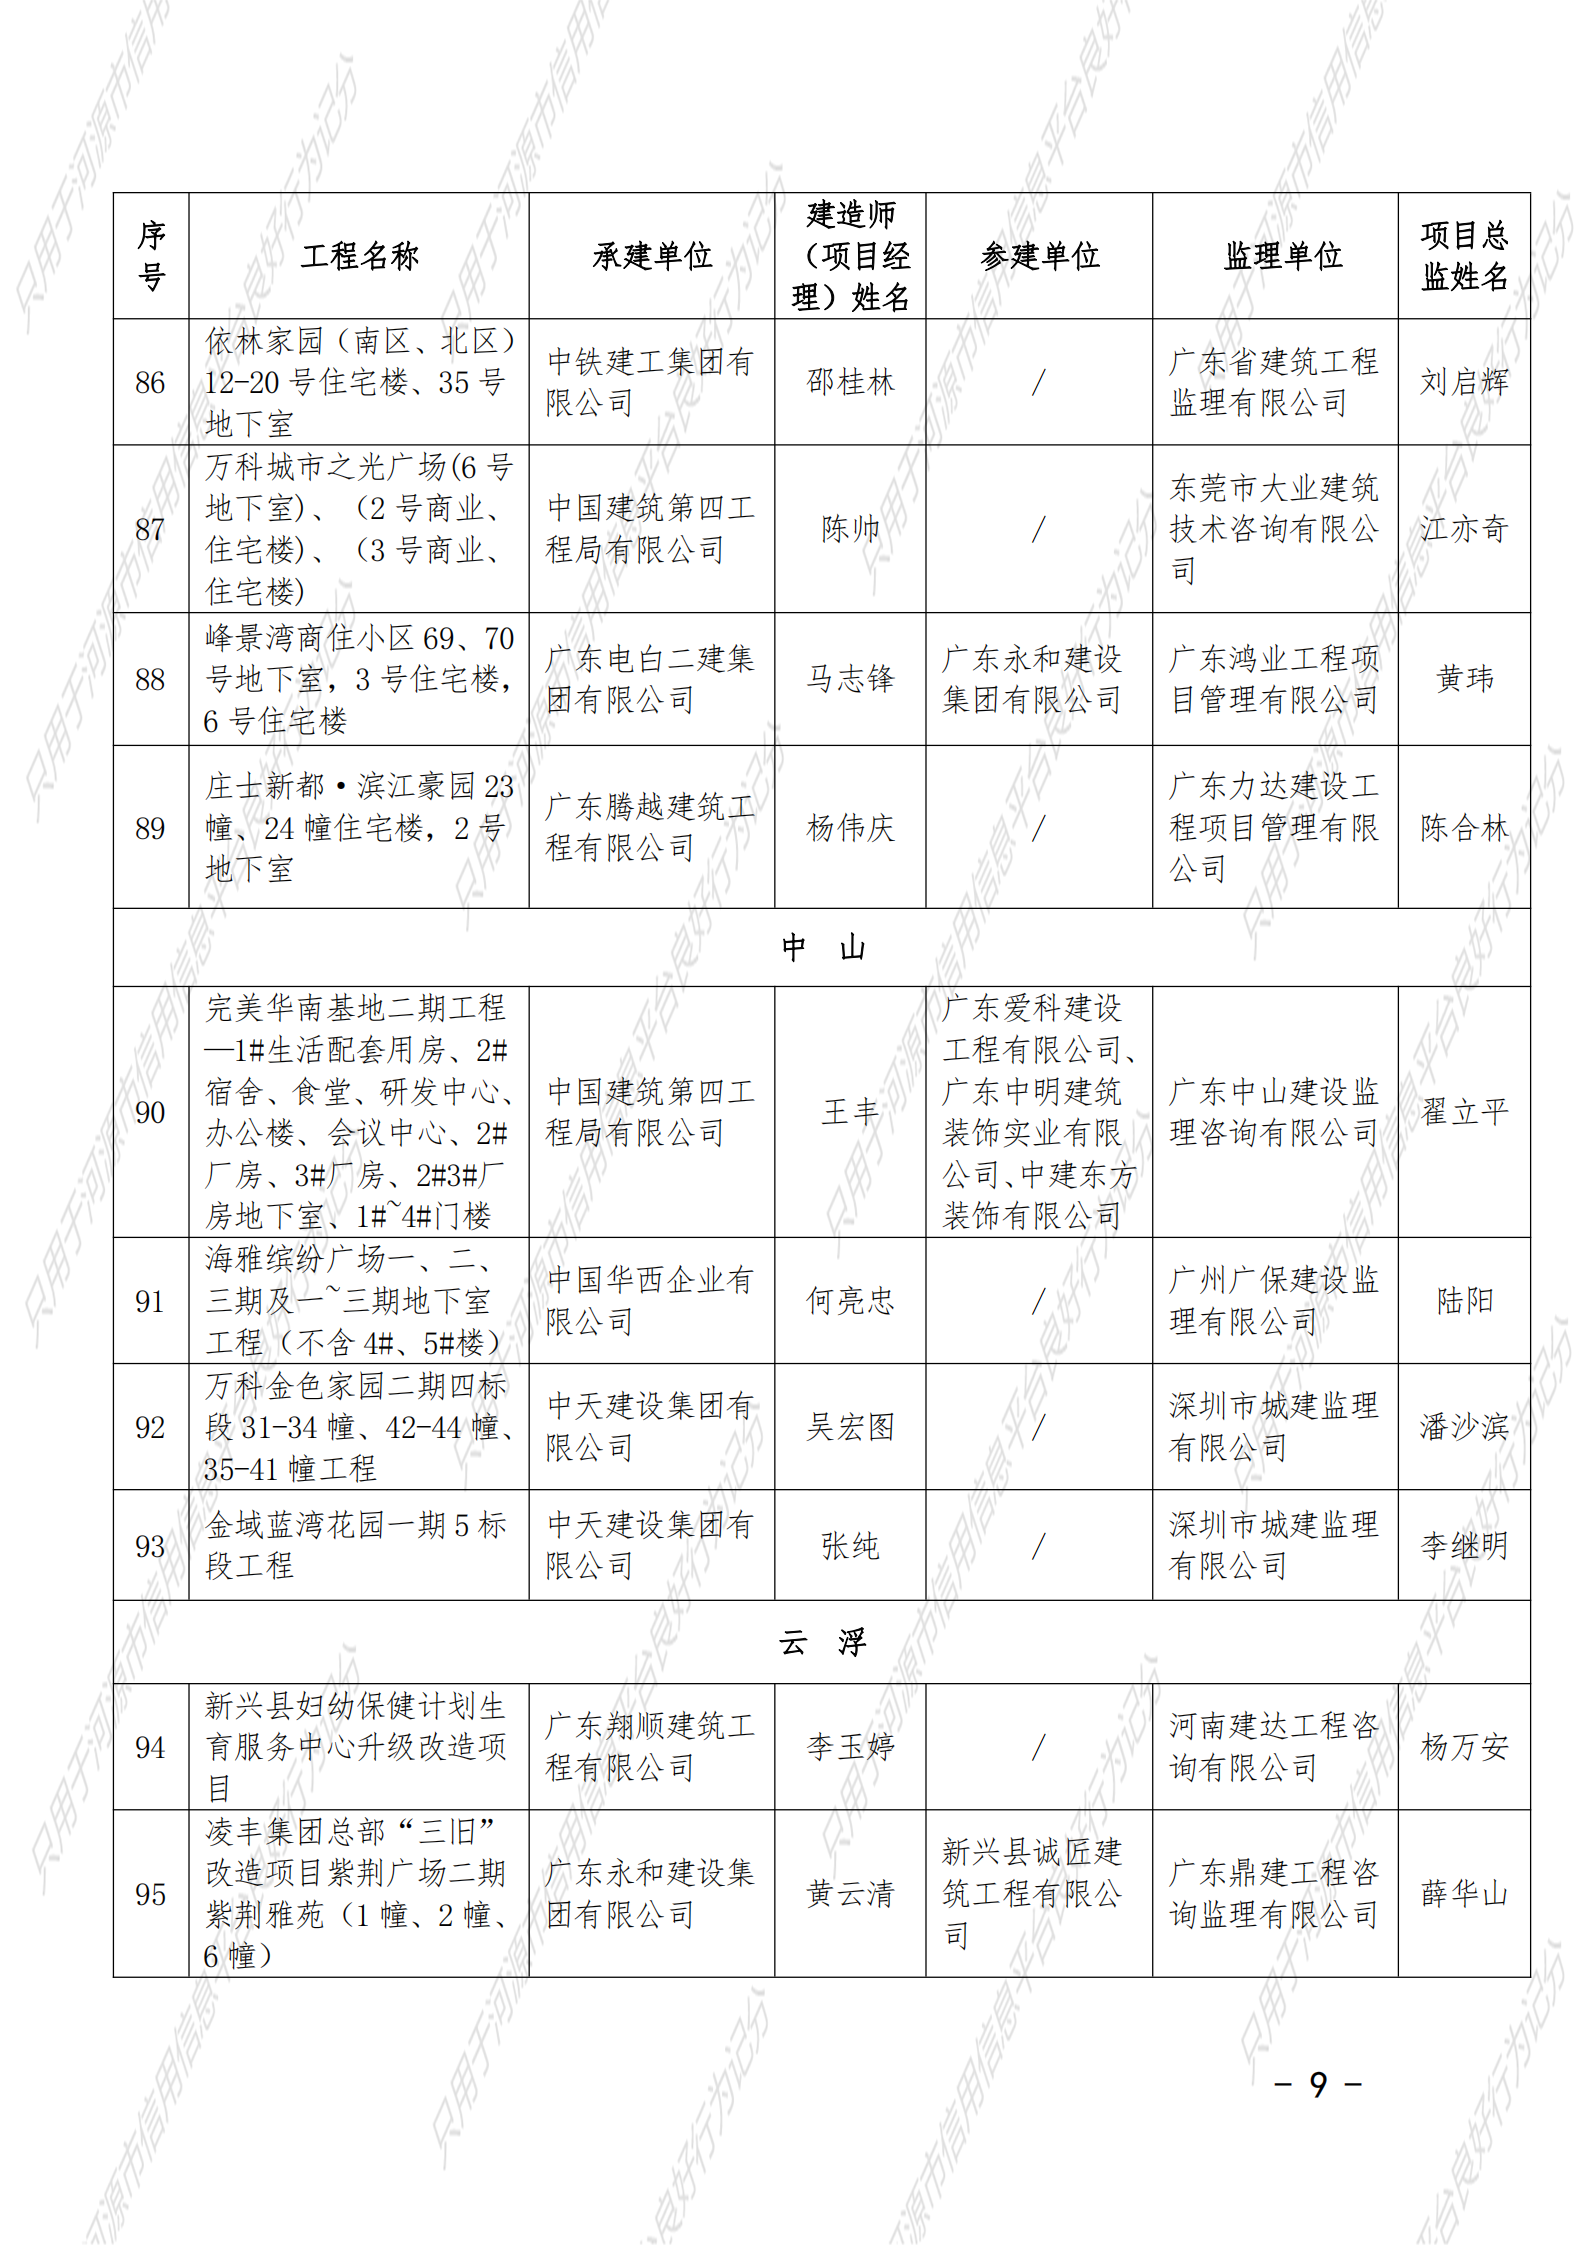 附件 2021年度广东省建设工程优质奖（房屋建筑及专业工程）名单_08